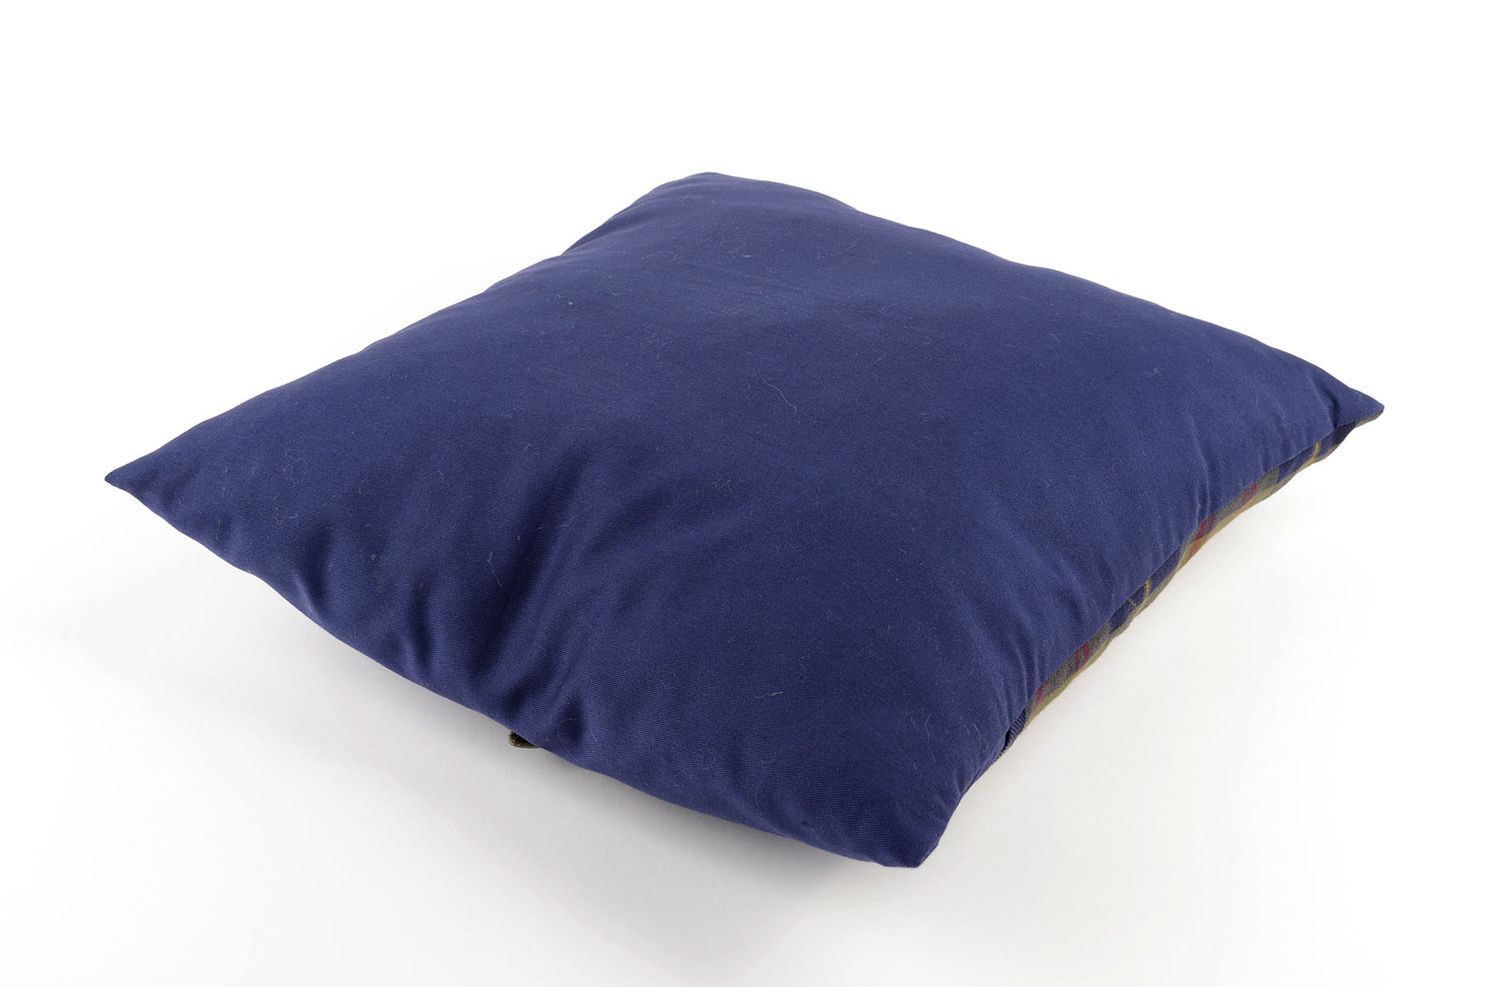 Подушка на диван подарок ручной работы красивая декор интерьера синяя в клеточку фото 3